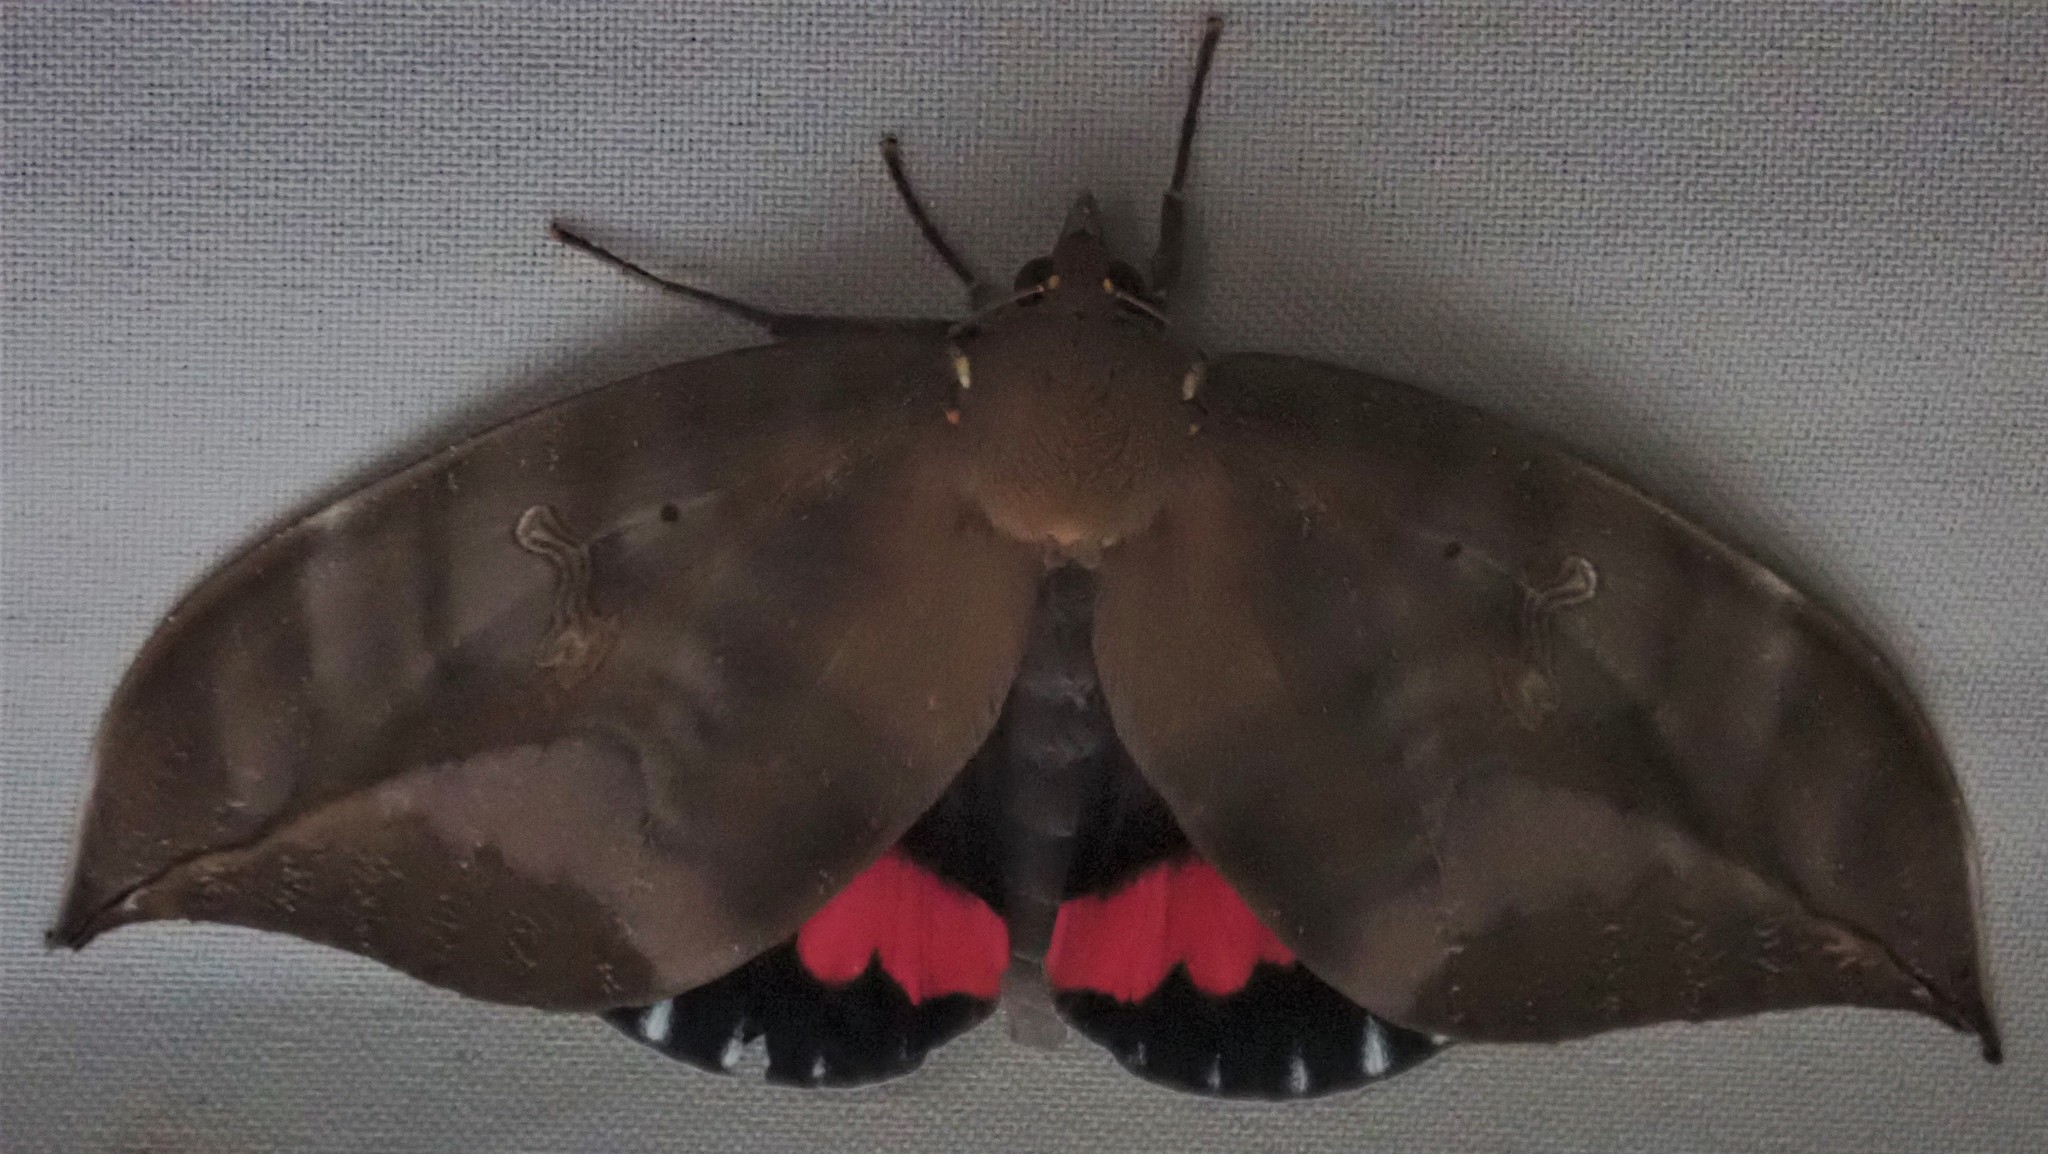 imperial fruit sucking moth